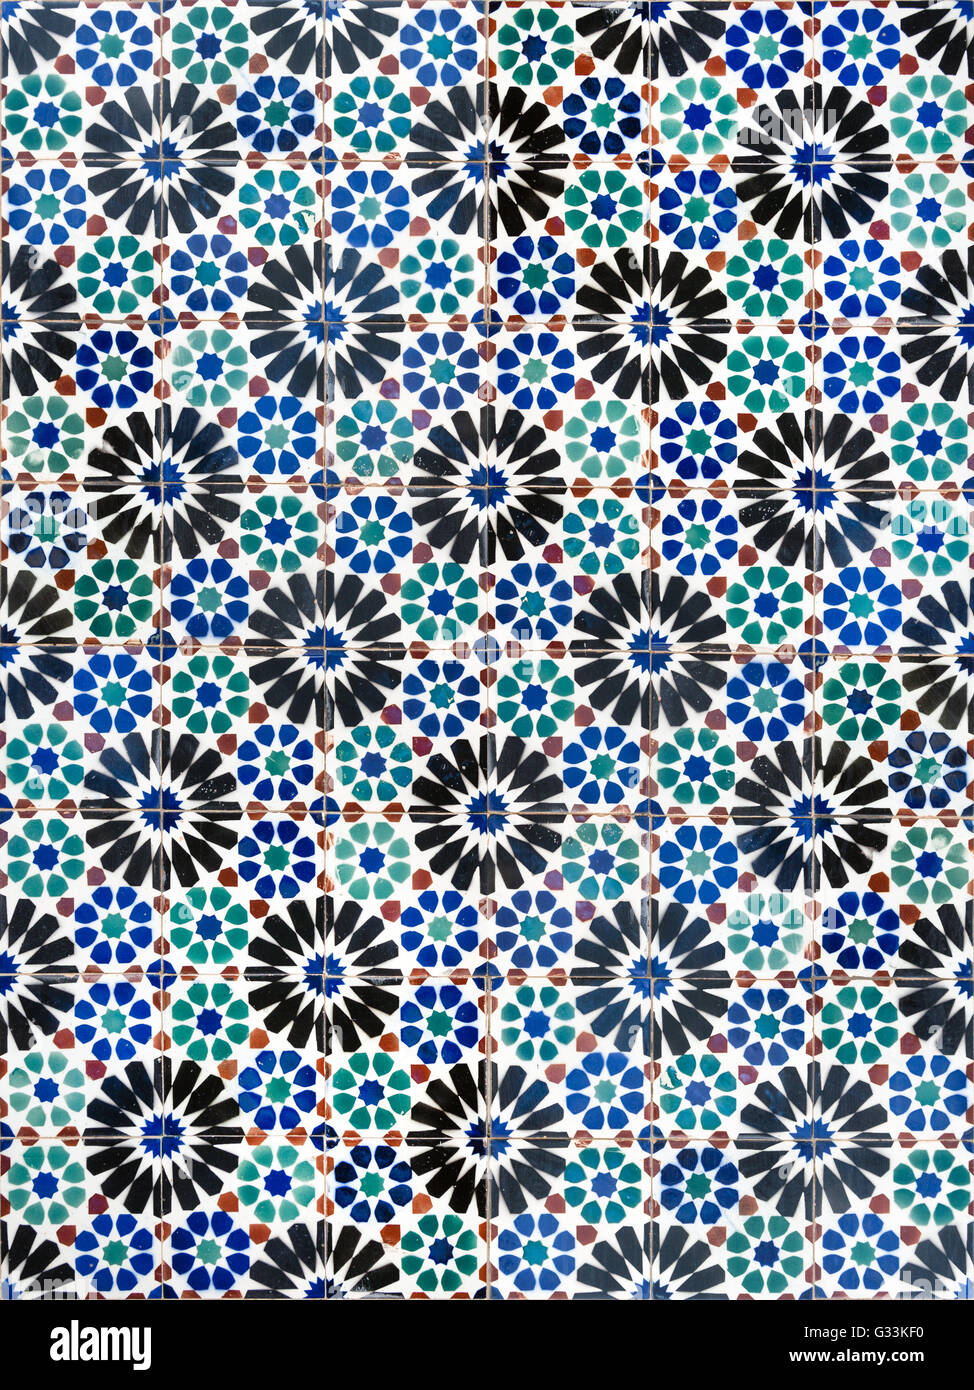 Modèle sans couture faite de carrelage portugais traditionnel - Azulejos, Portugal Banque D'Images